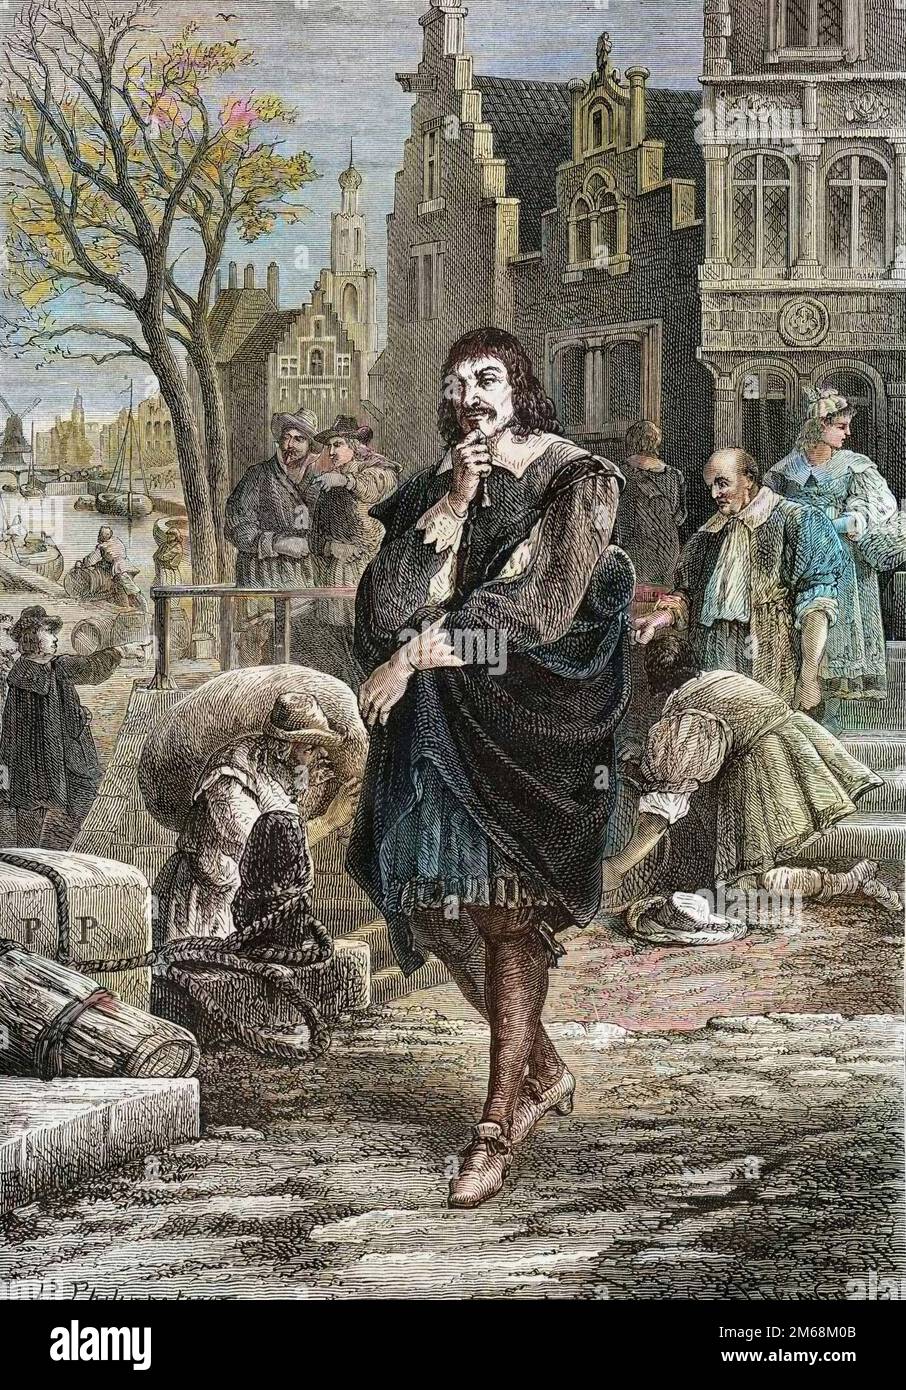 Rene Descartes (1596-1650), philosophe et mathematicien francais se promenant dans les rues d'Amsterdam - Descartes in Amsterdam Stock Photo